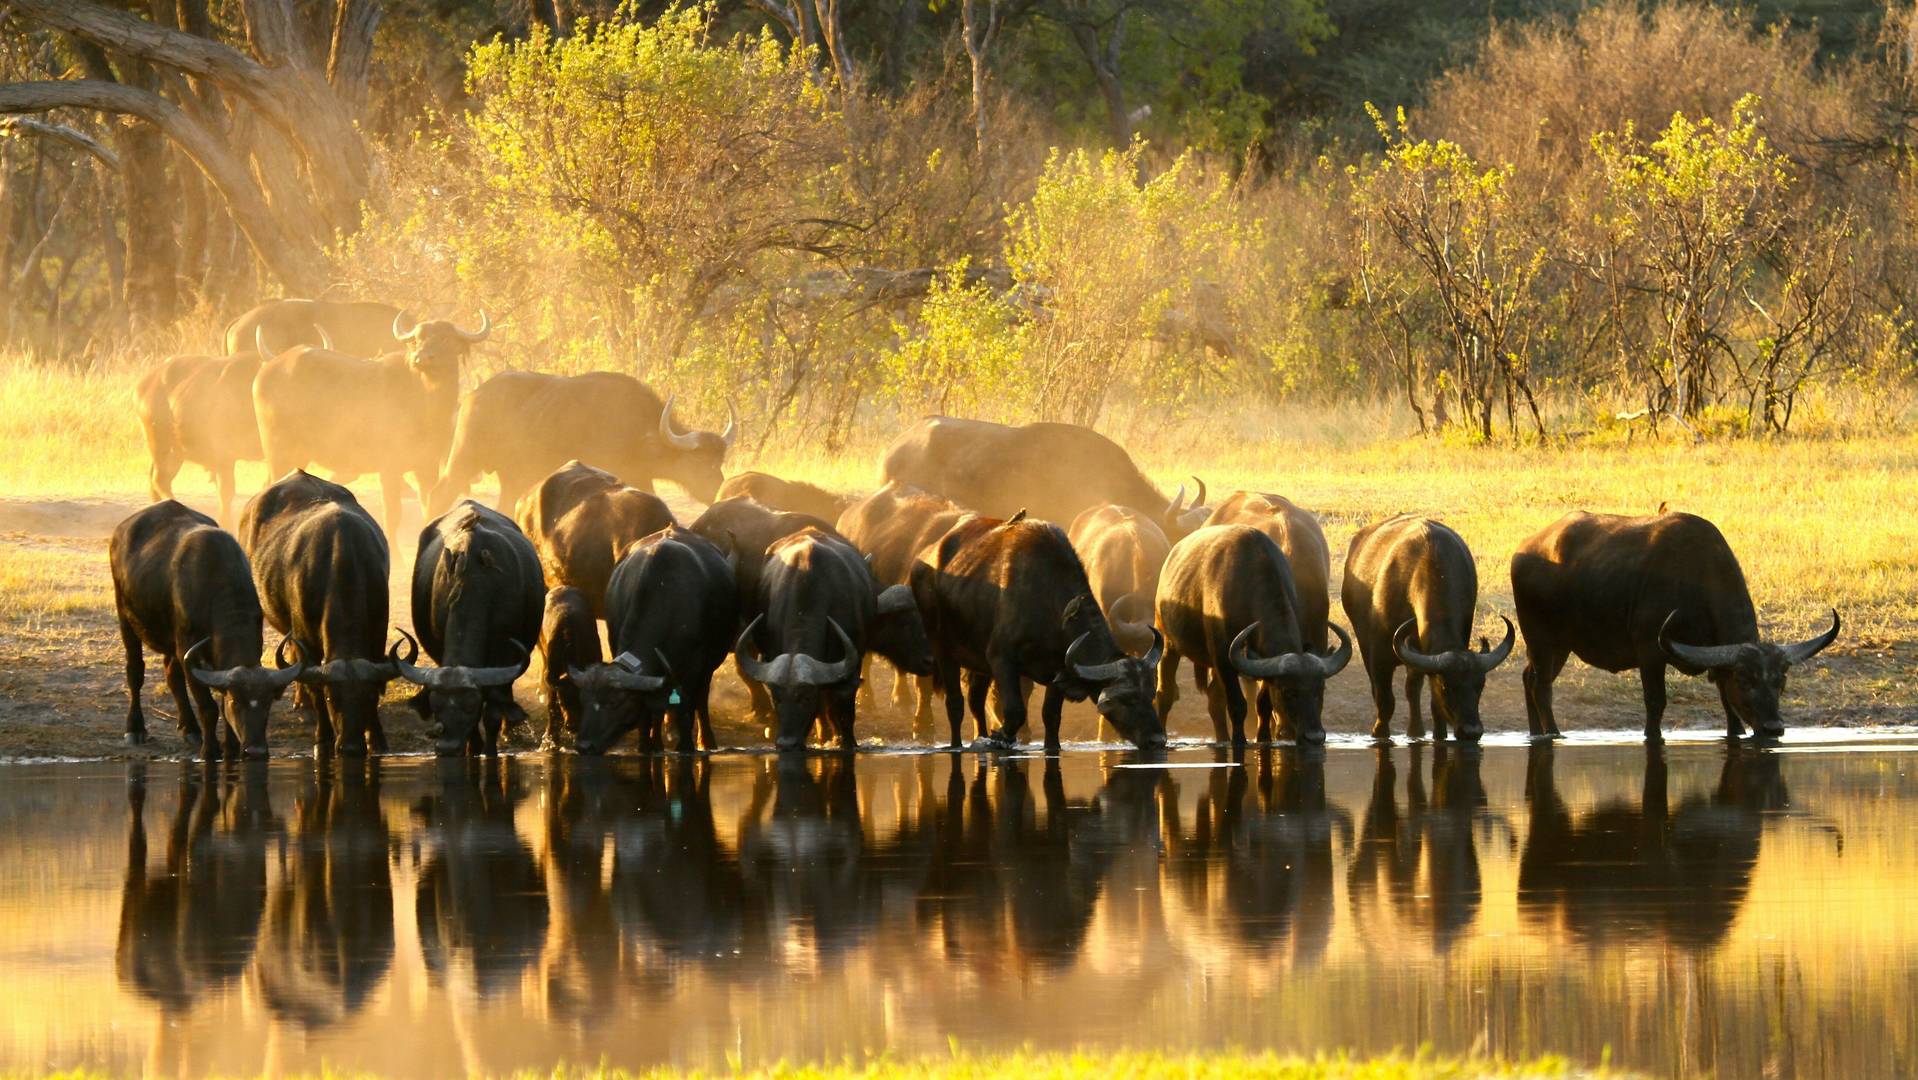 hunting safari in kenya